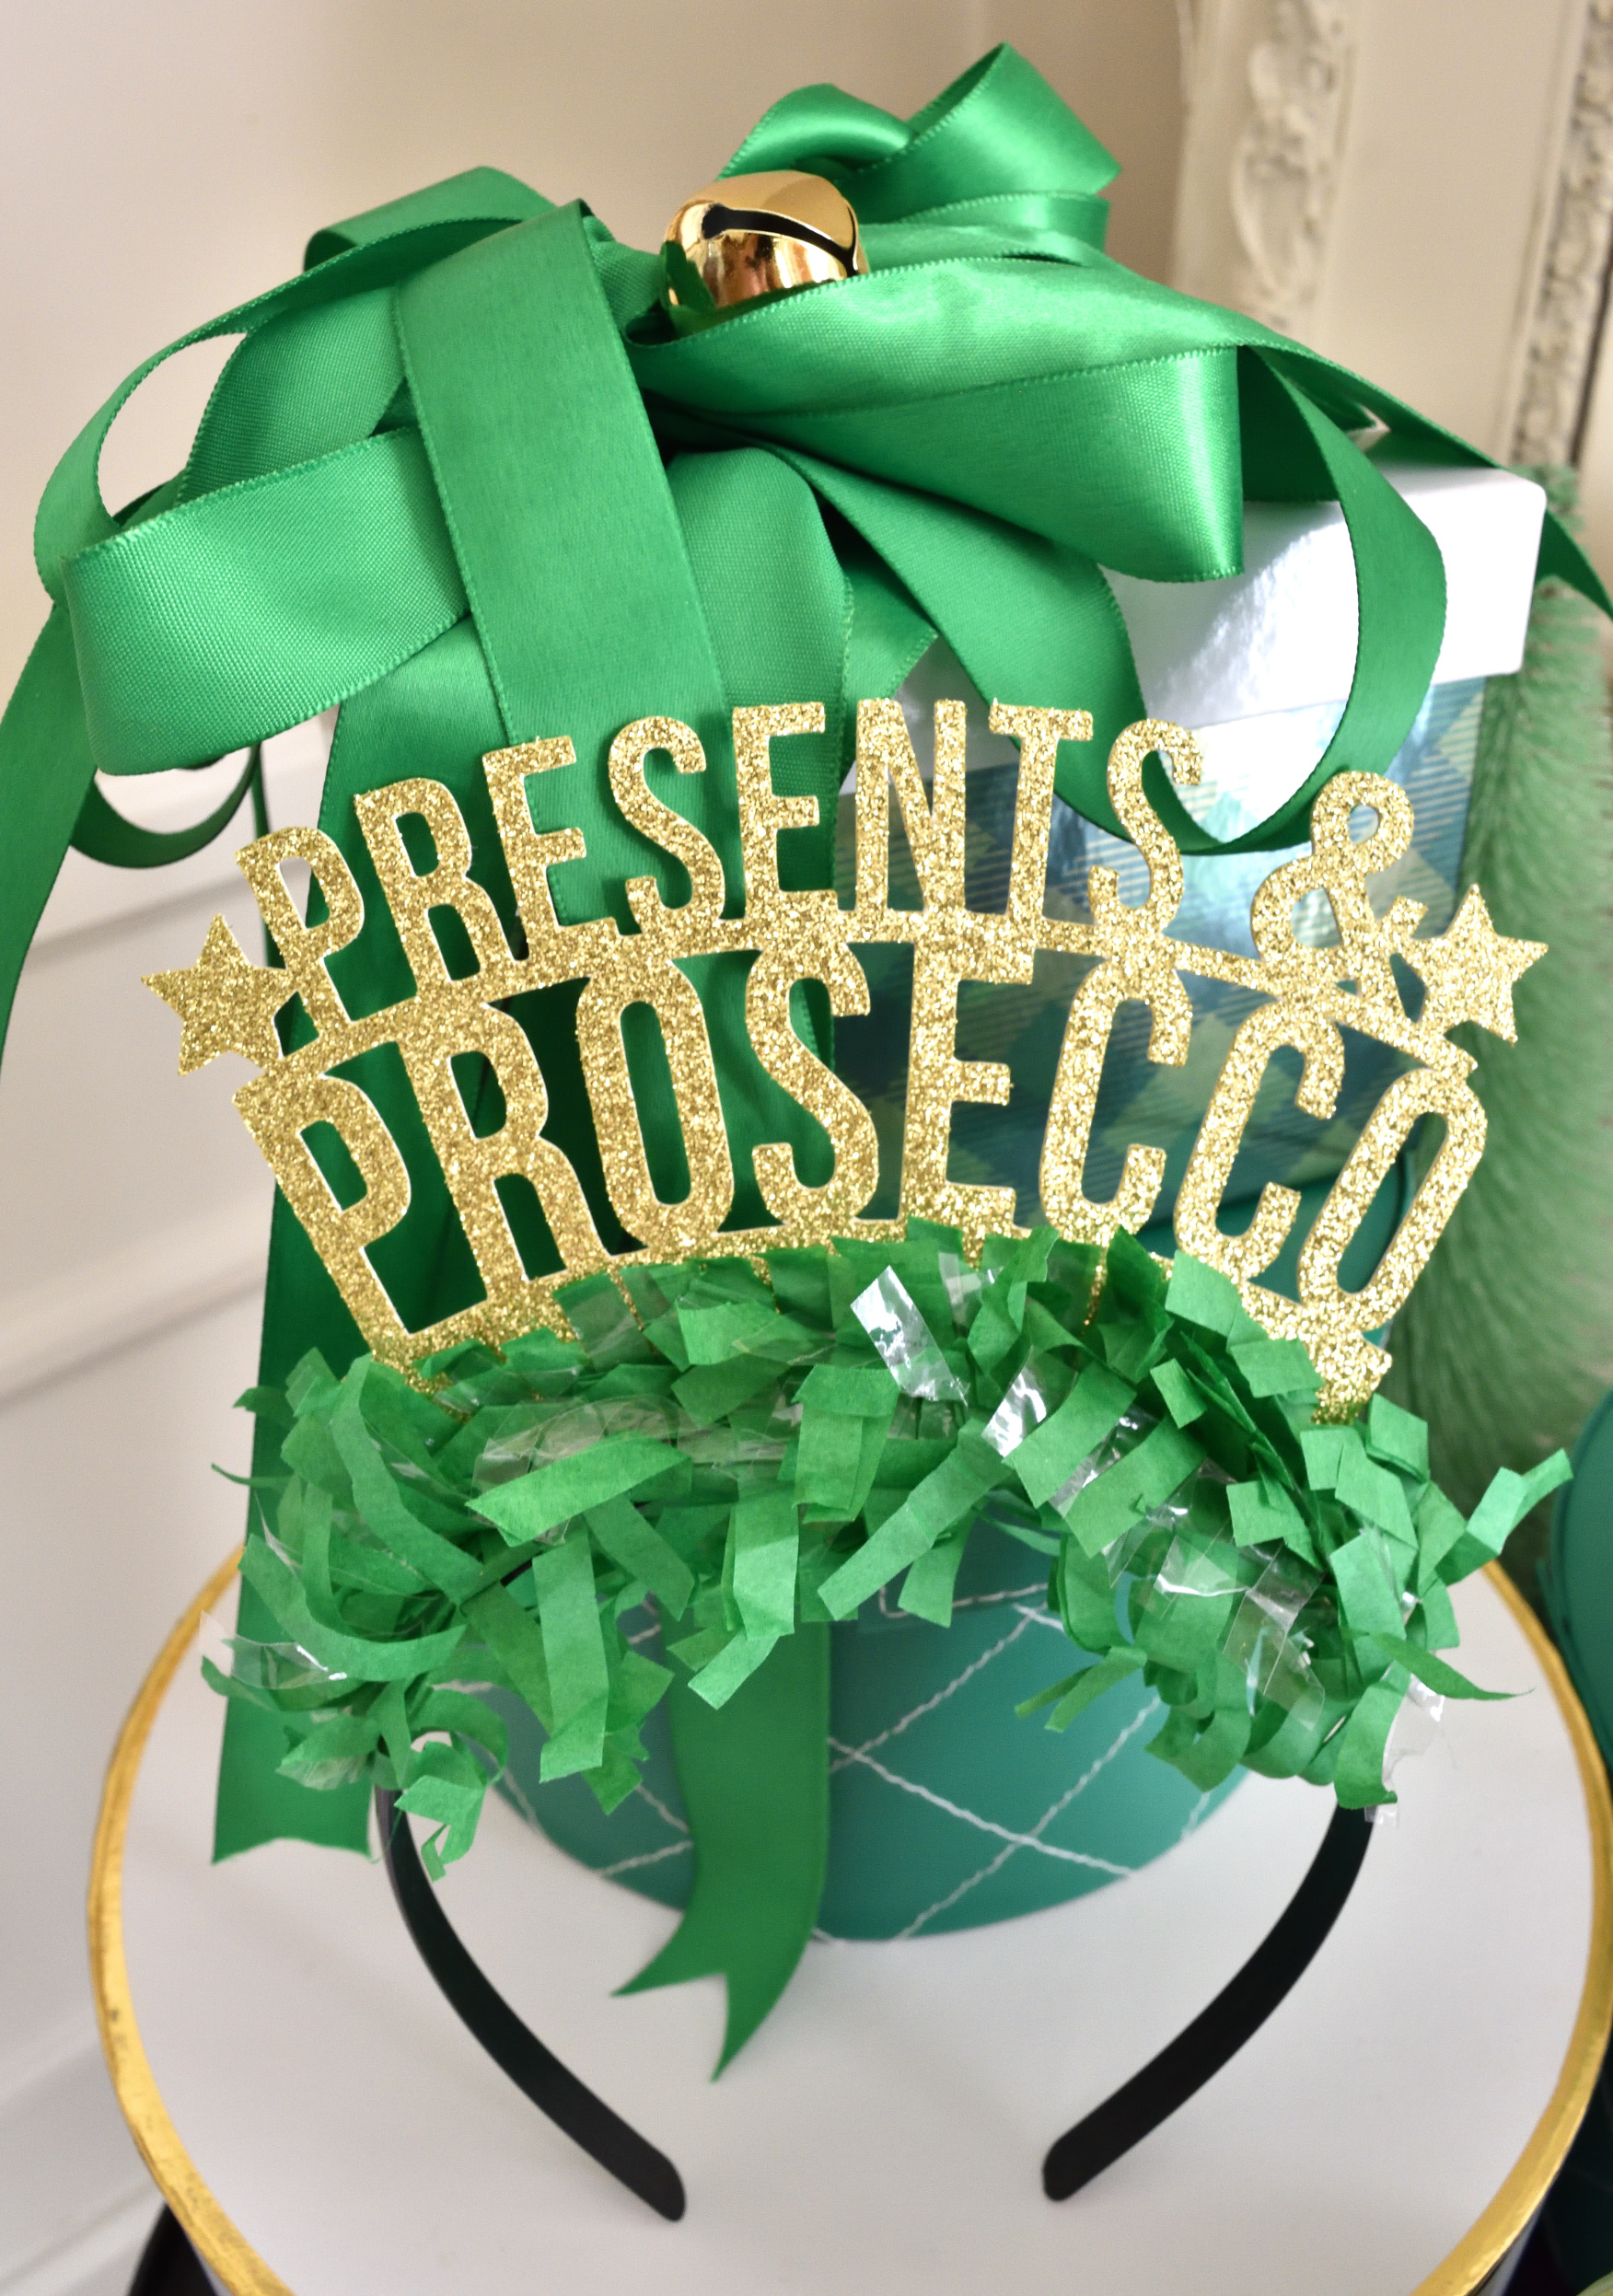 Presents & prosecco crown